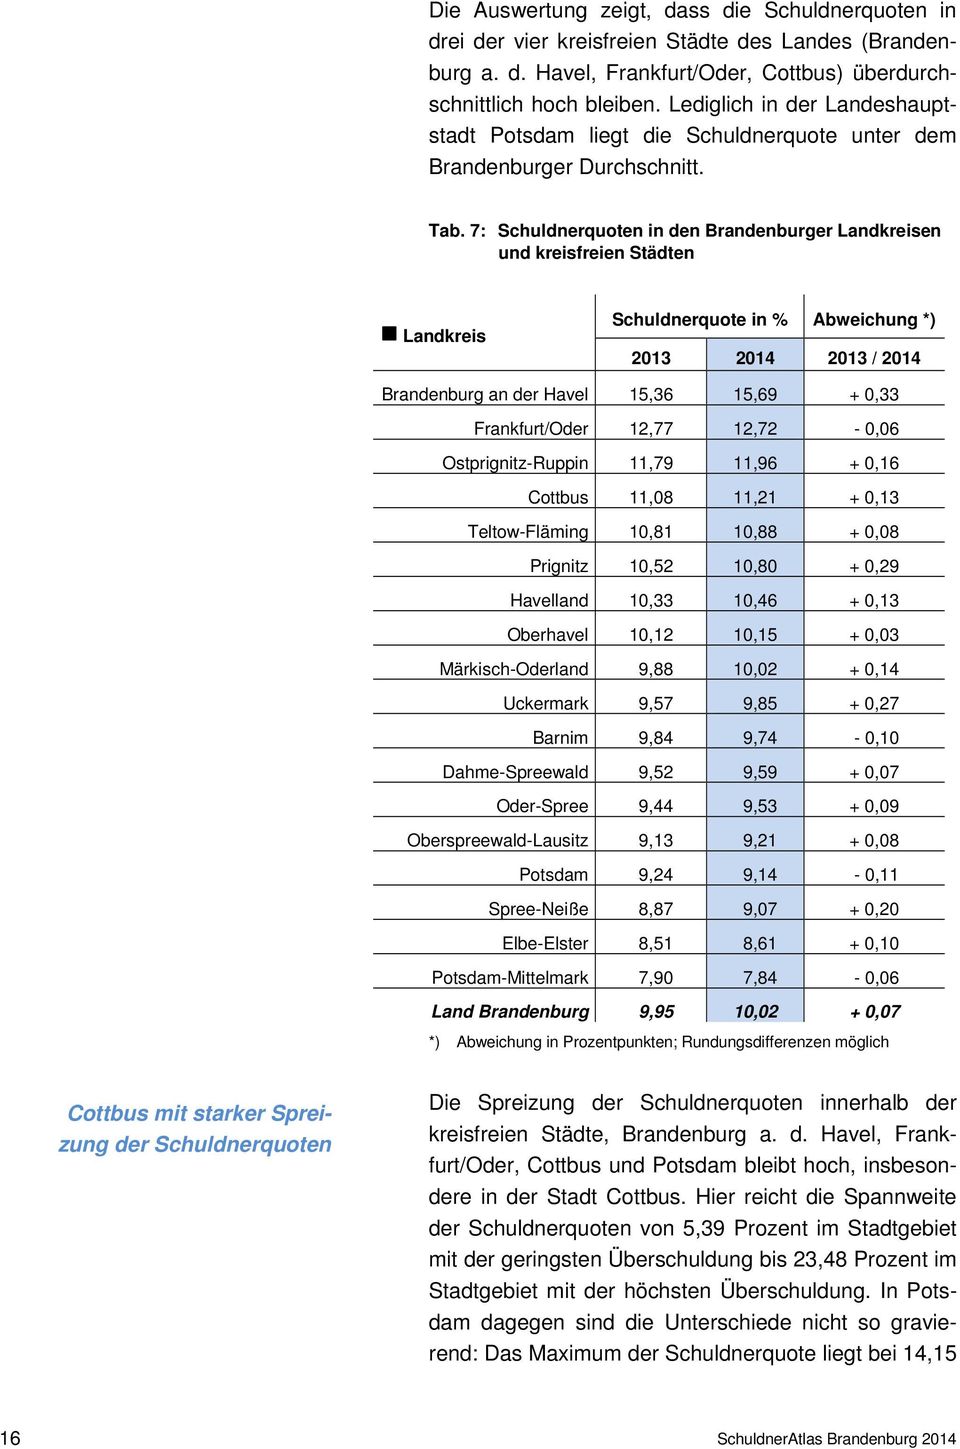 7: Schuldnerquoten in den Brandenburger Landkreisen und kreisfreien Städten g Landkreis Schuldnerquote in % Abweichung *) 2013 2014 2013 / 2014 Brandenburg an der Havel 15,36 15,69 + 0,33